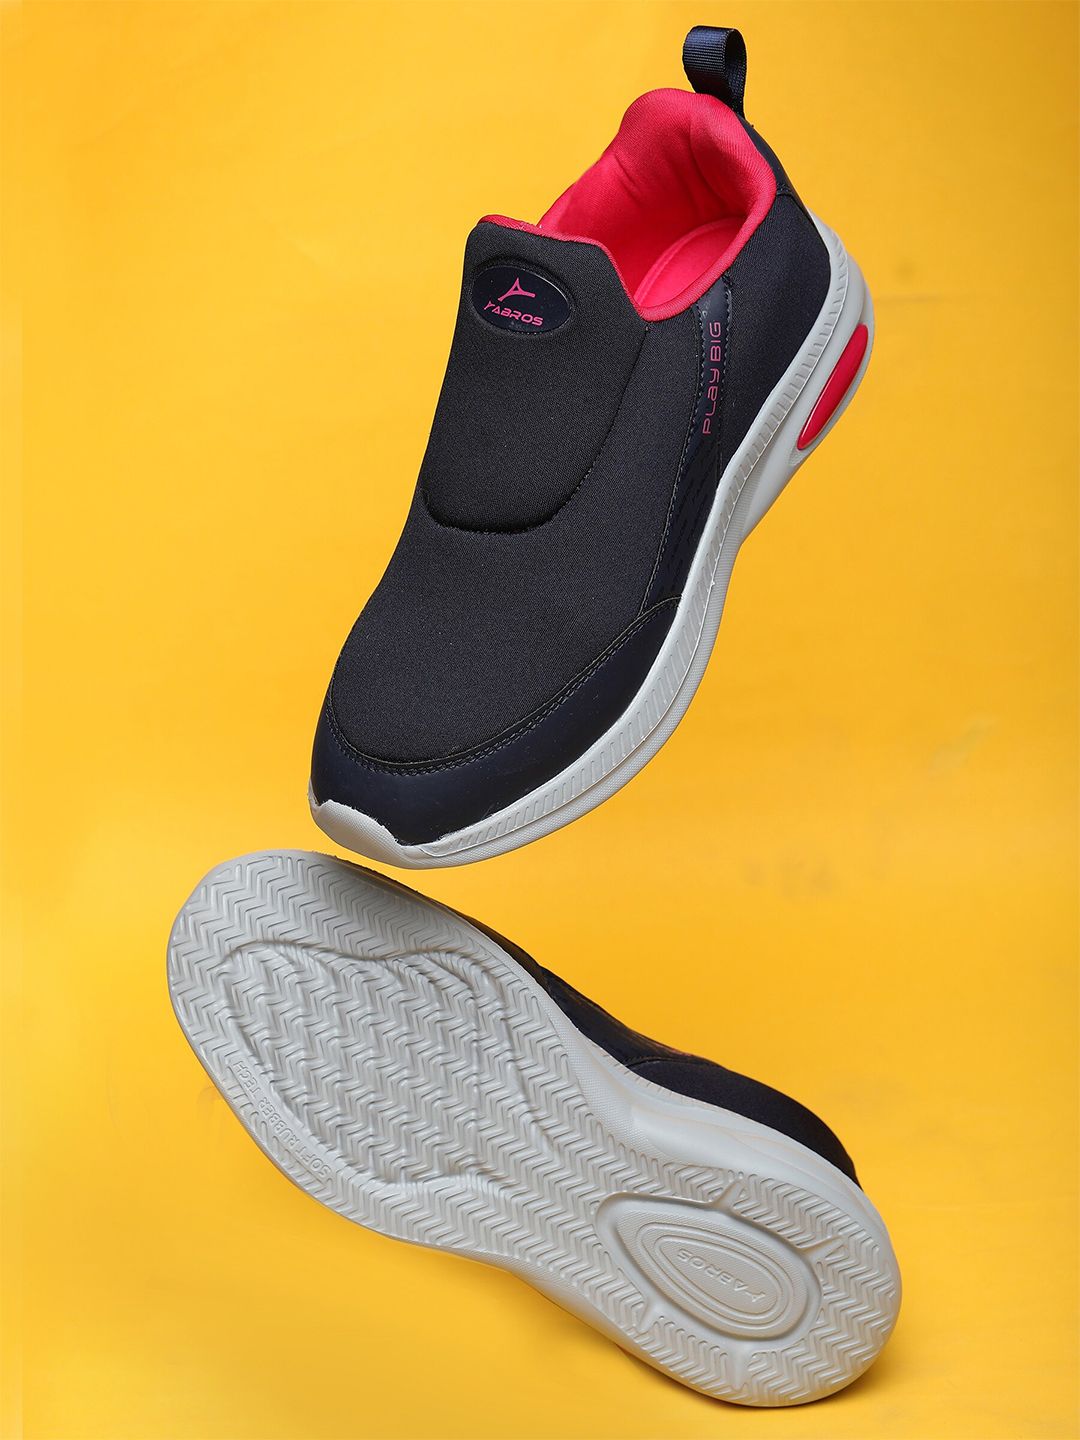 ABROS Women Mesh Walking Shoes Price in India